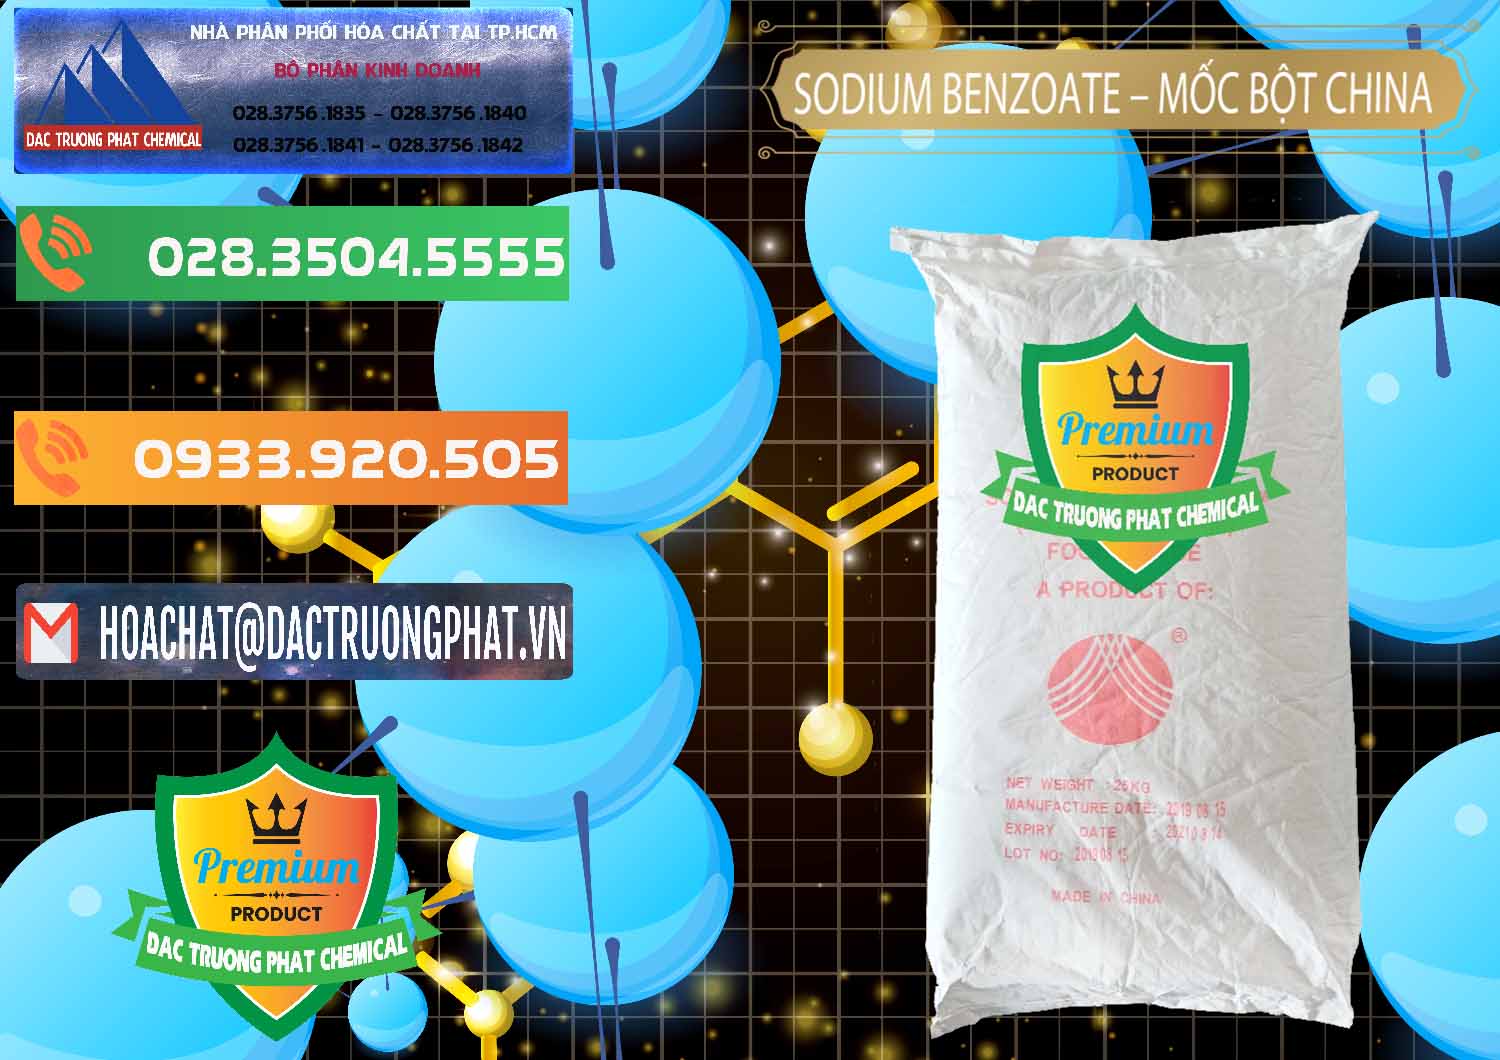 Cty chuyên bán _ cung cấp Sodium Benzoate - Mốc Bột Chữ Cam Food Grade Trung Quốc China - 0135 - Cty chuyên nhập khẩu ( cung cấp ) hóa chất tại TP.HCM - hoachatxulynuoc.com.vn